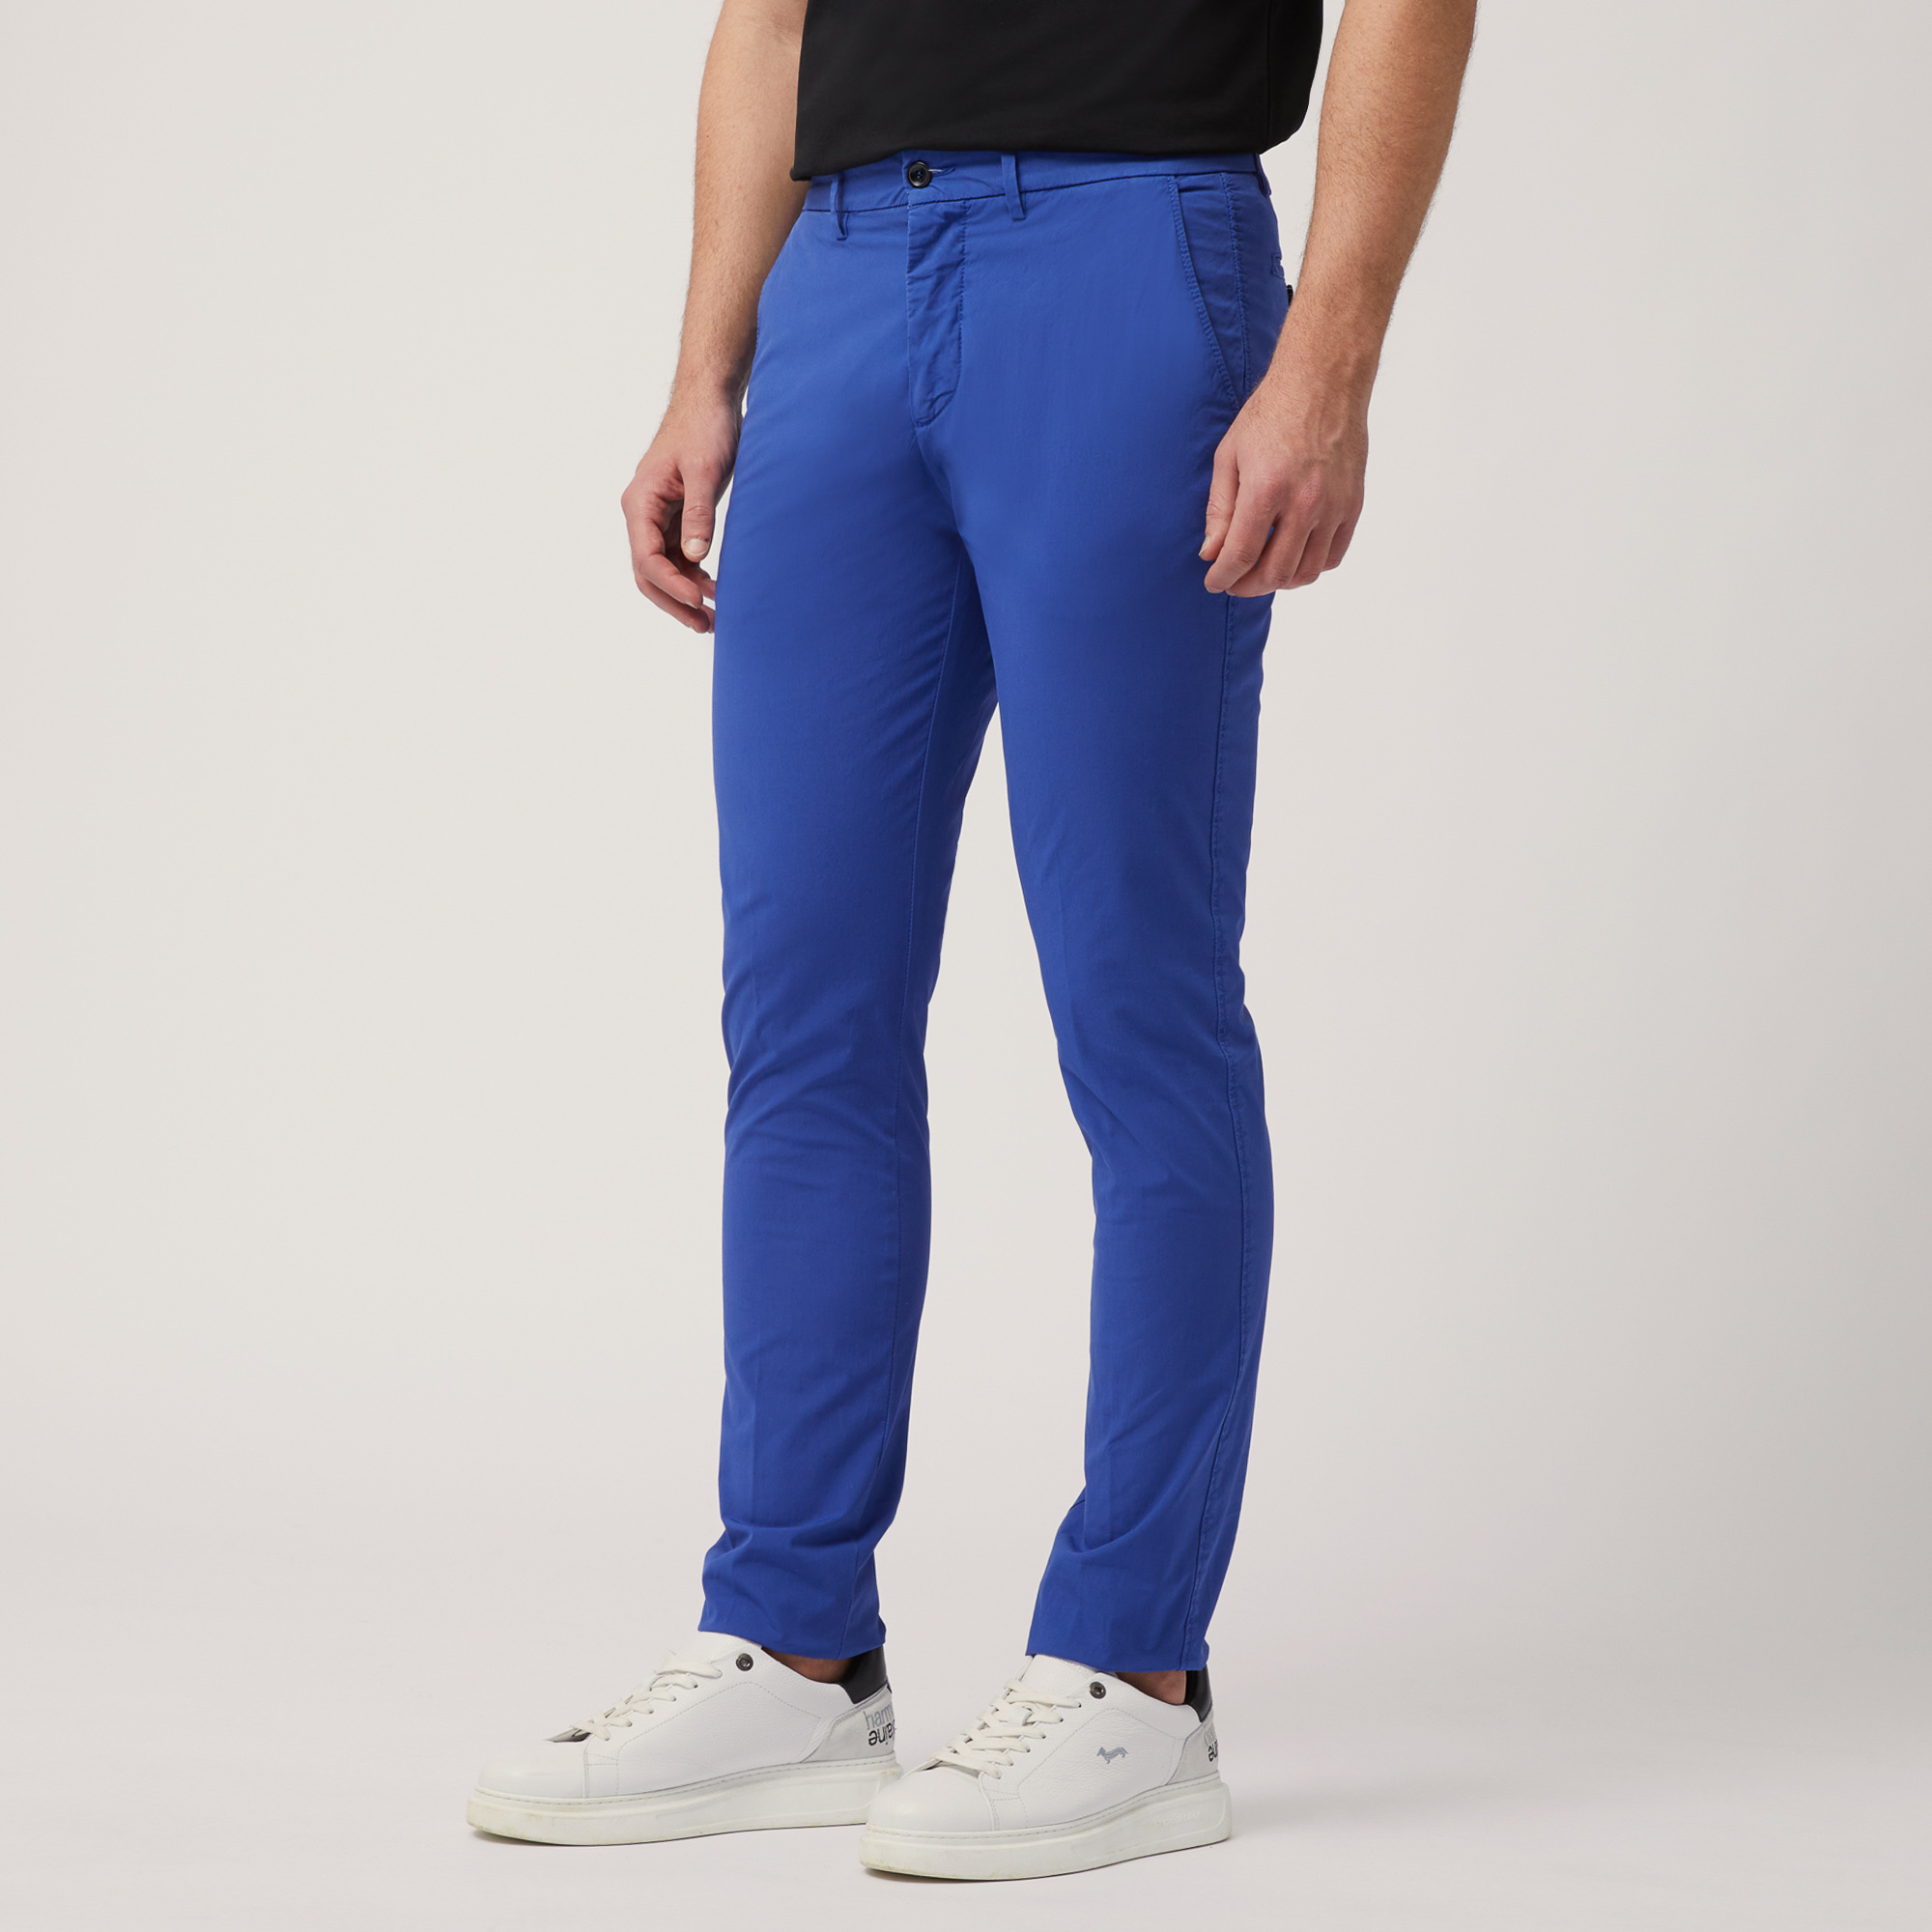 Pantaloni Chino Narrow Fit, Ortensia, large